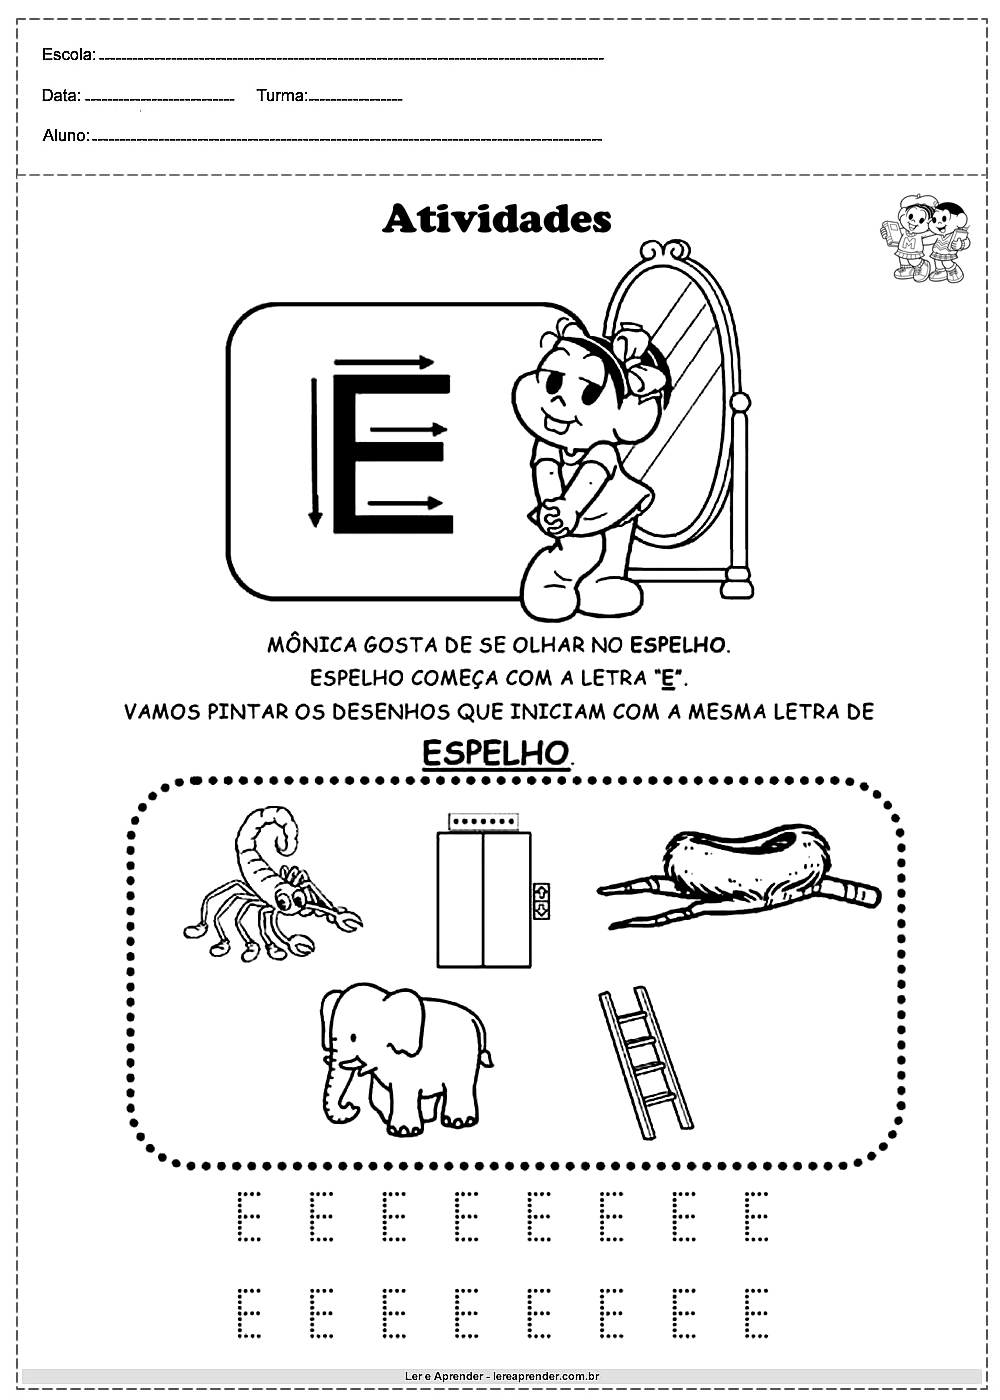 Atividades com alfabeto turma da monica letra E